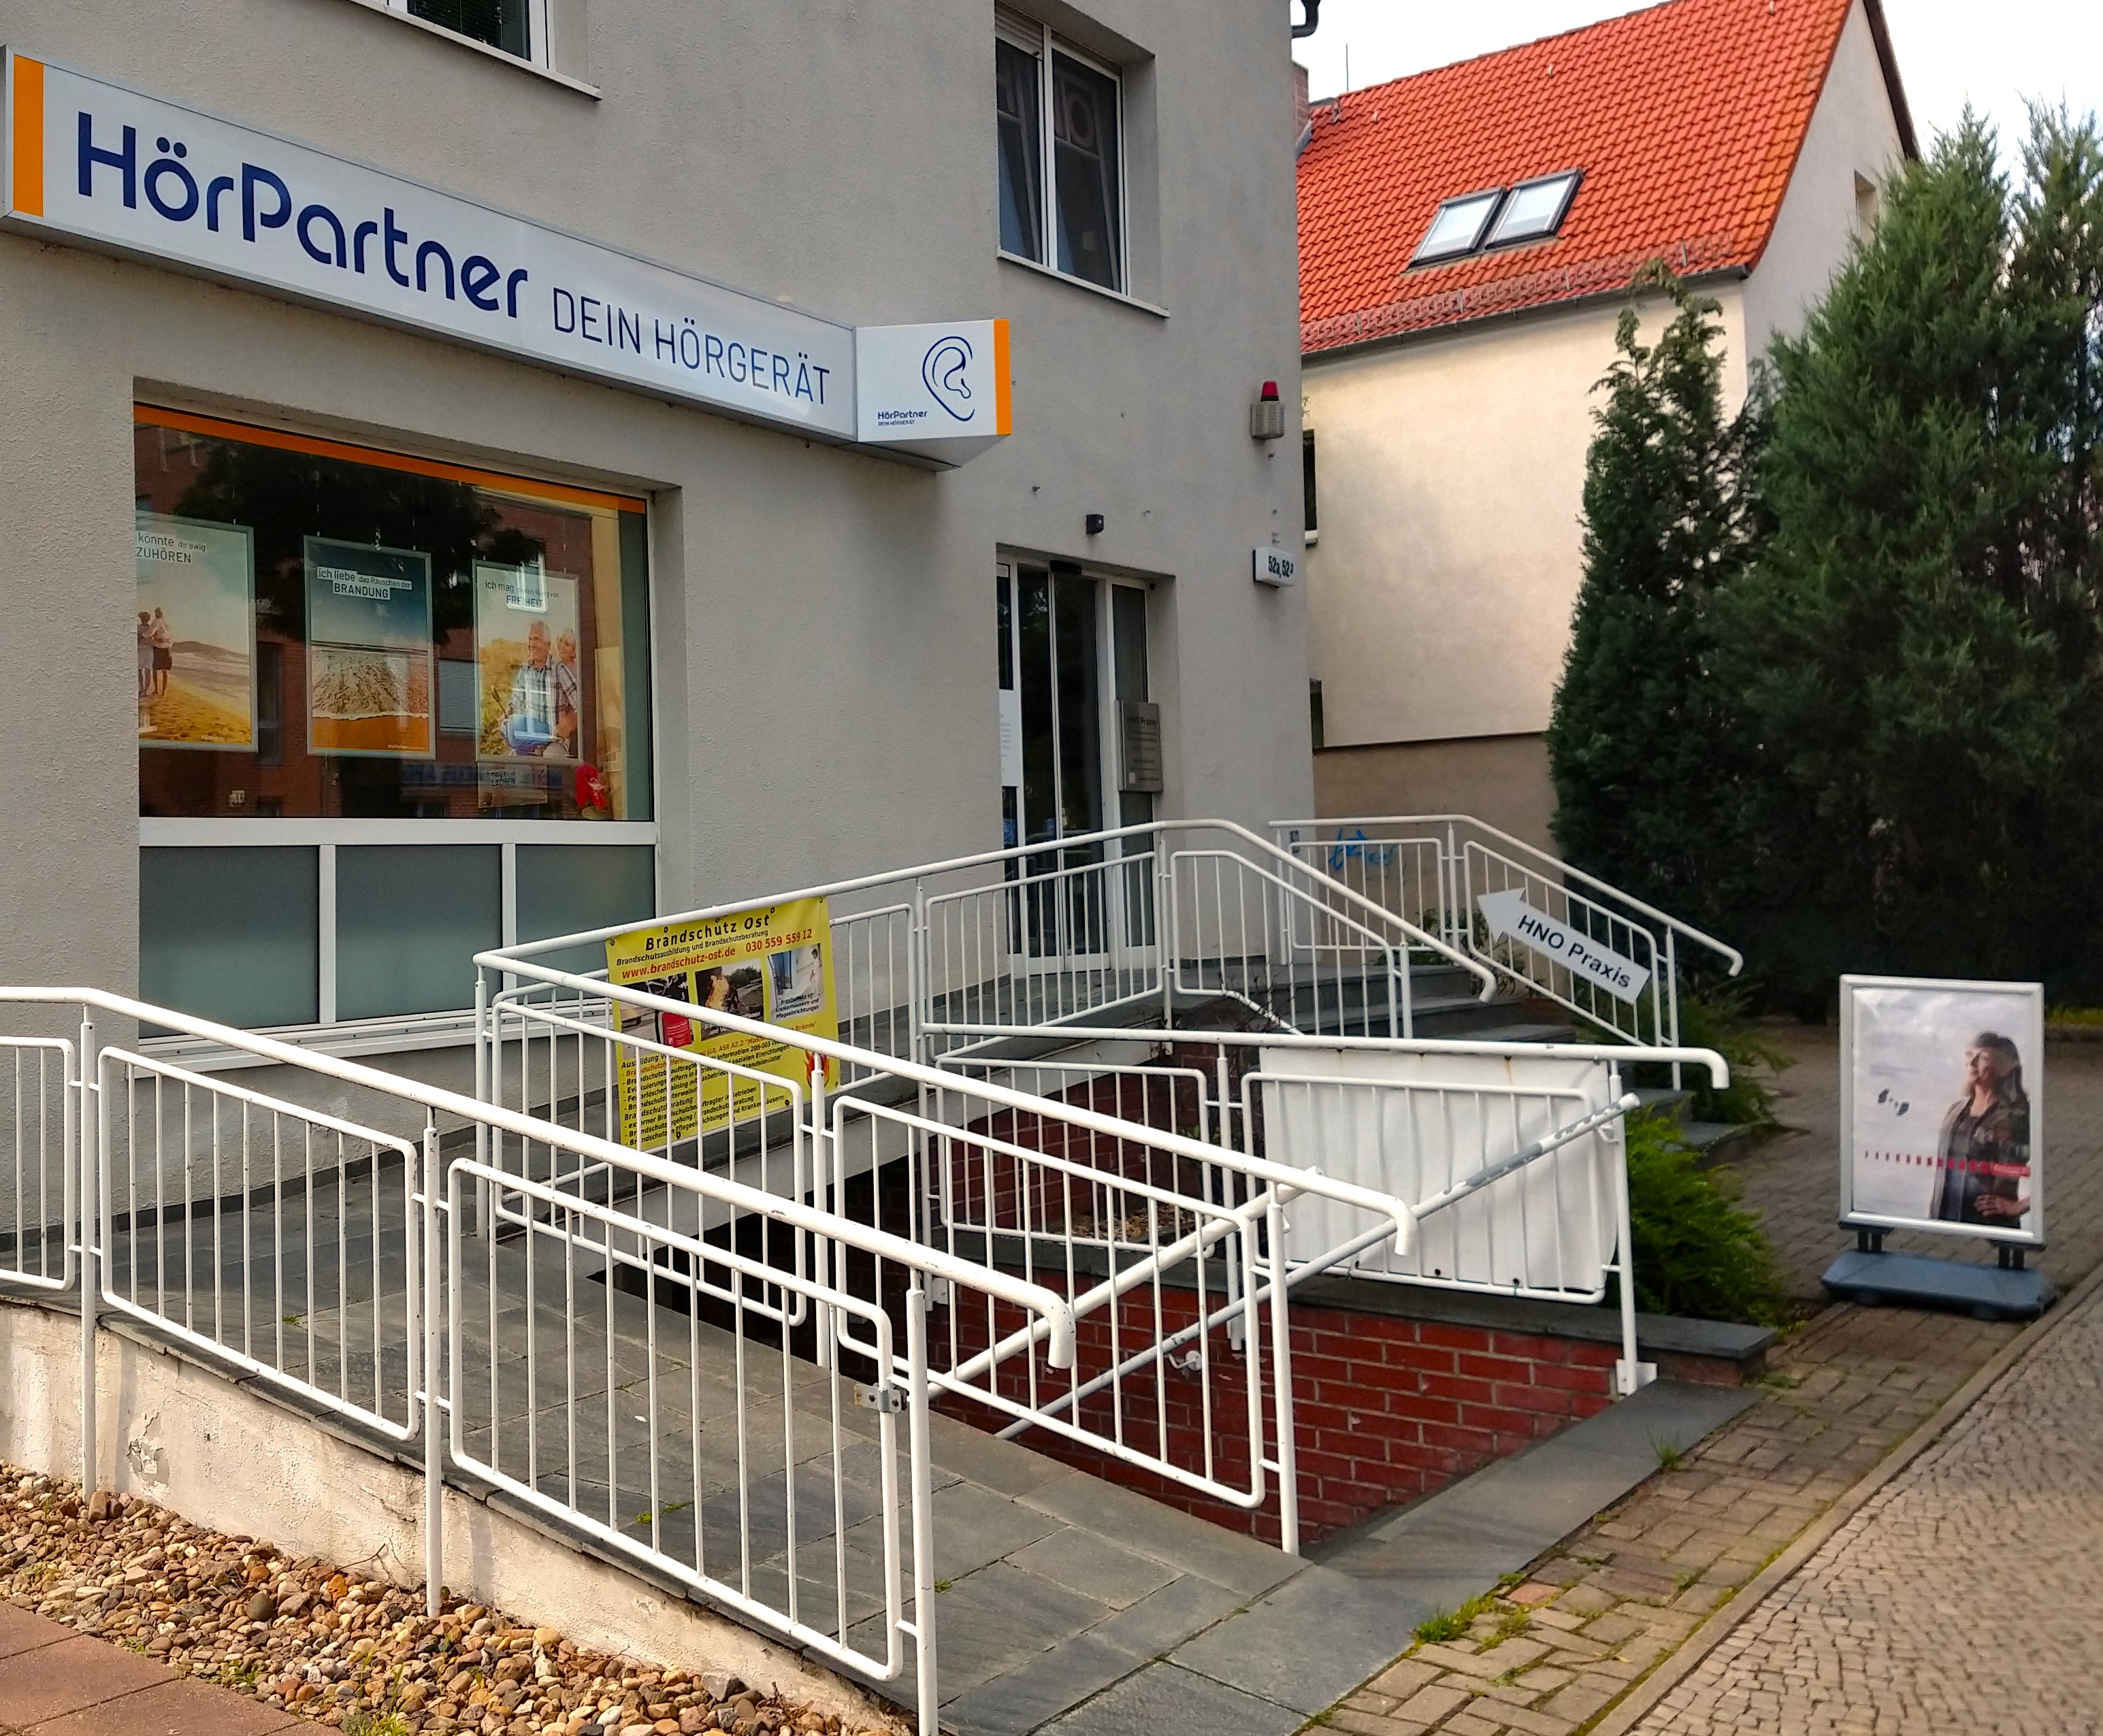 Bild 1 HörPartner GmbH in Berlin